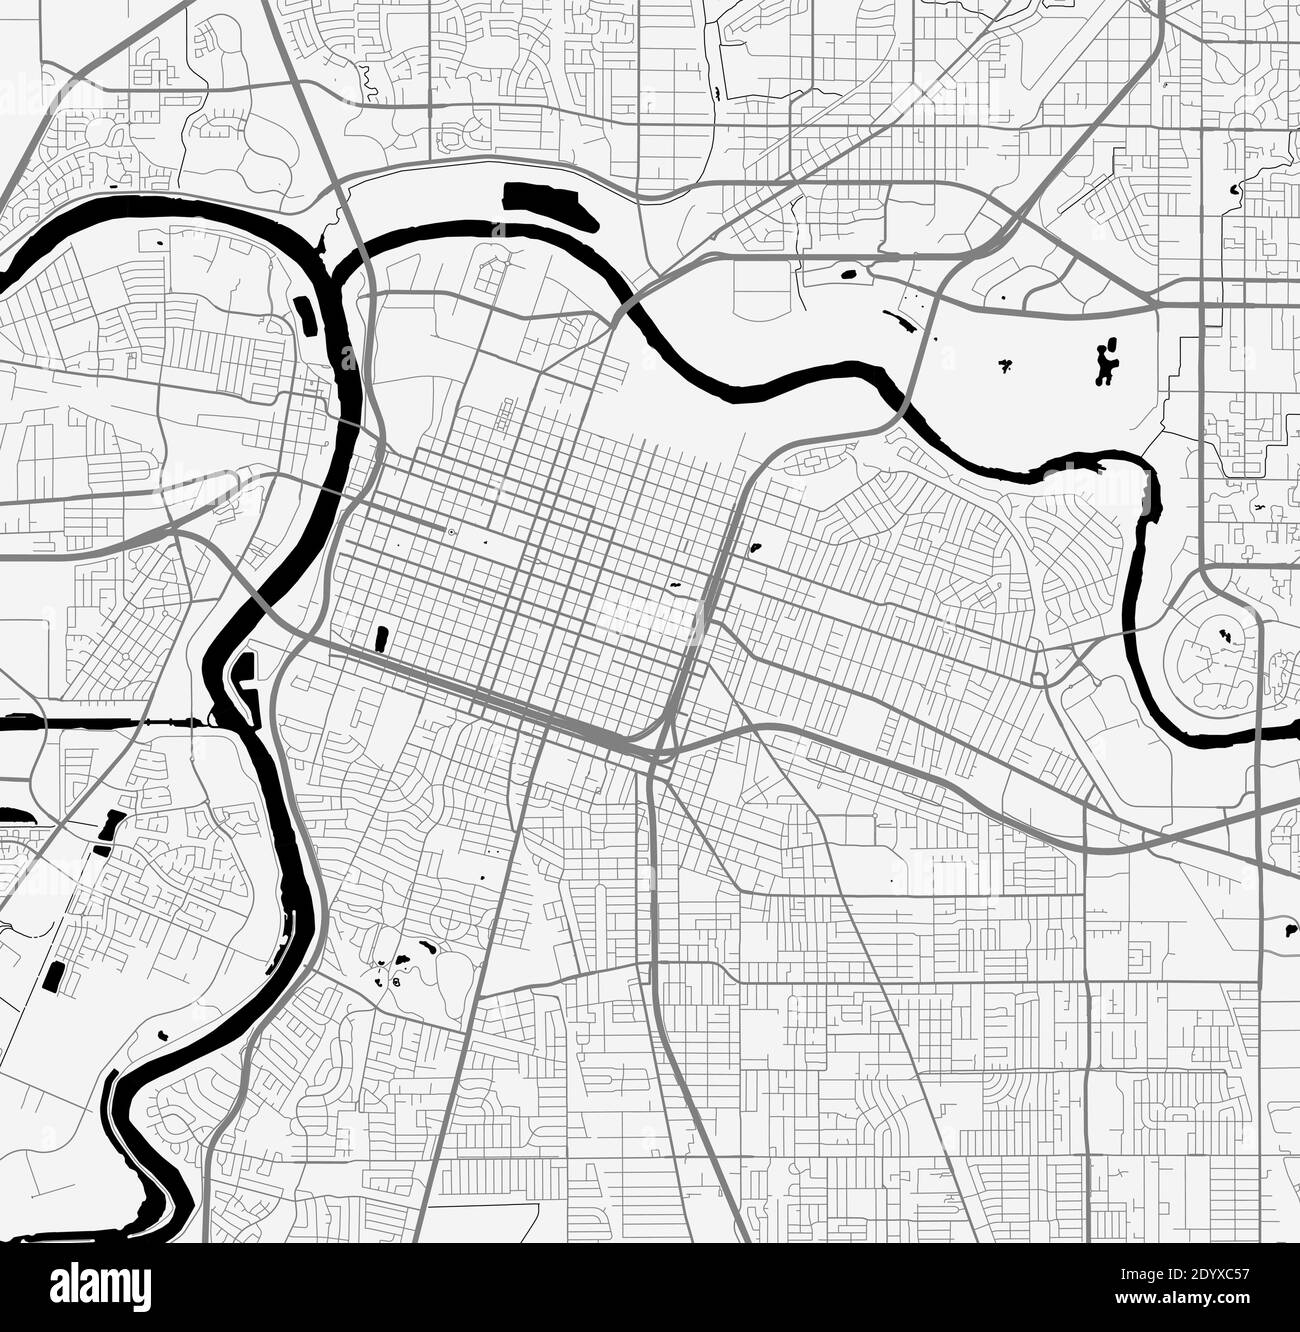 Plan de la ville urbaine de Sacramento. Illustration vectorielle, affiche artistique en niveaux de gris de la carte de Sacramento. Carte des rues avec vue sur les routes et la région métropolitaine. Illustration de Vecteur